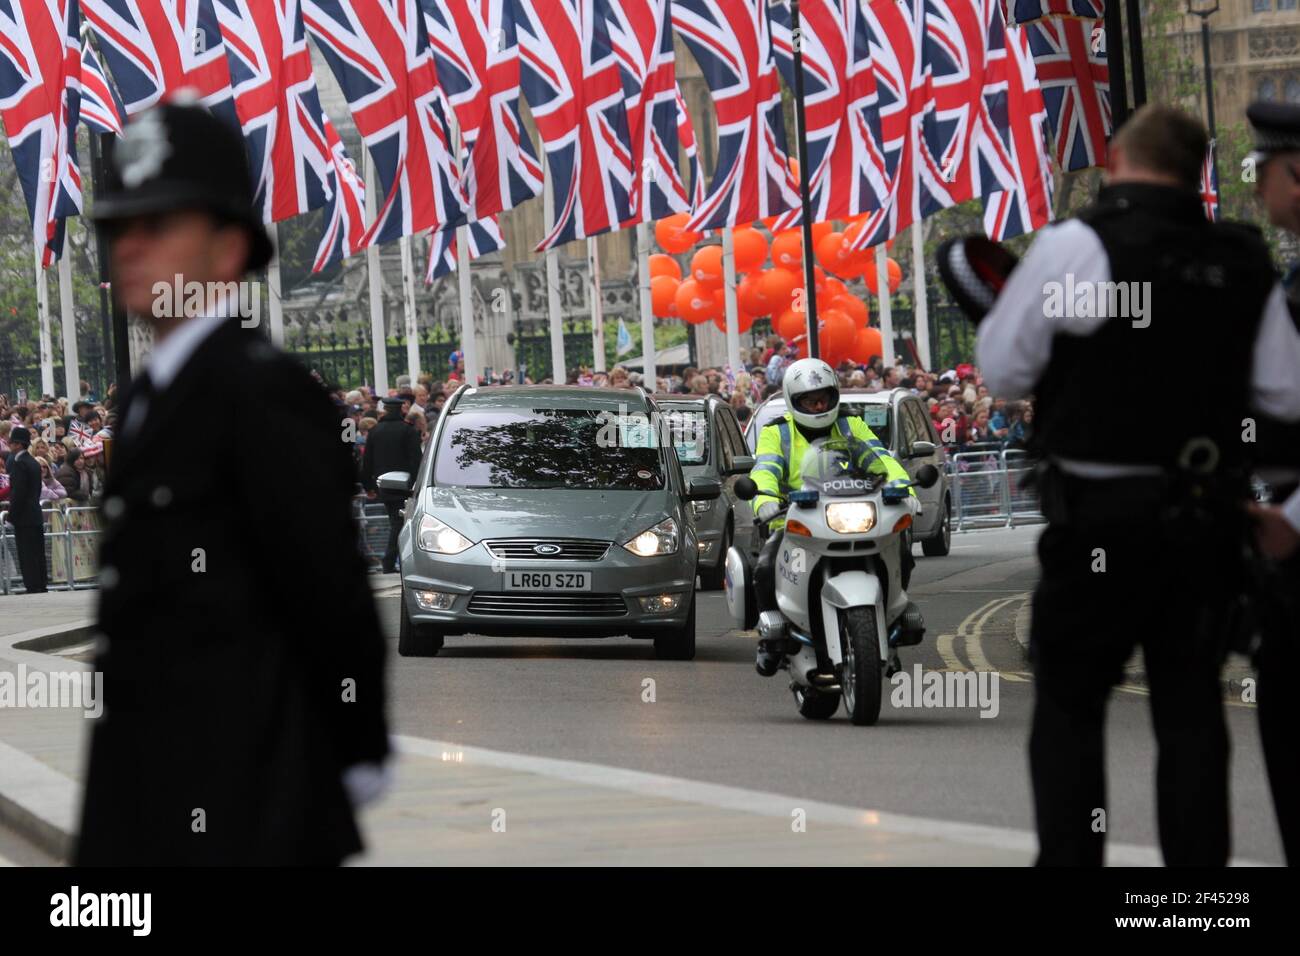 29 de abril de 2011. Westminster Abbey, Londres, Inglaterra. Día de la boda real. Fuerte presencia policial a lo largo de la ruta y los alrededores de la Abadía de Westminster. Enorme c Foto de stock